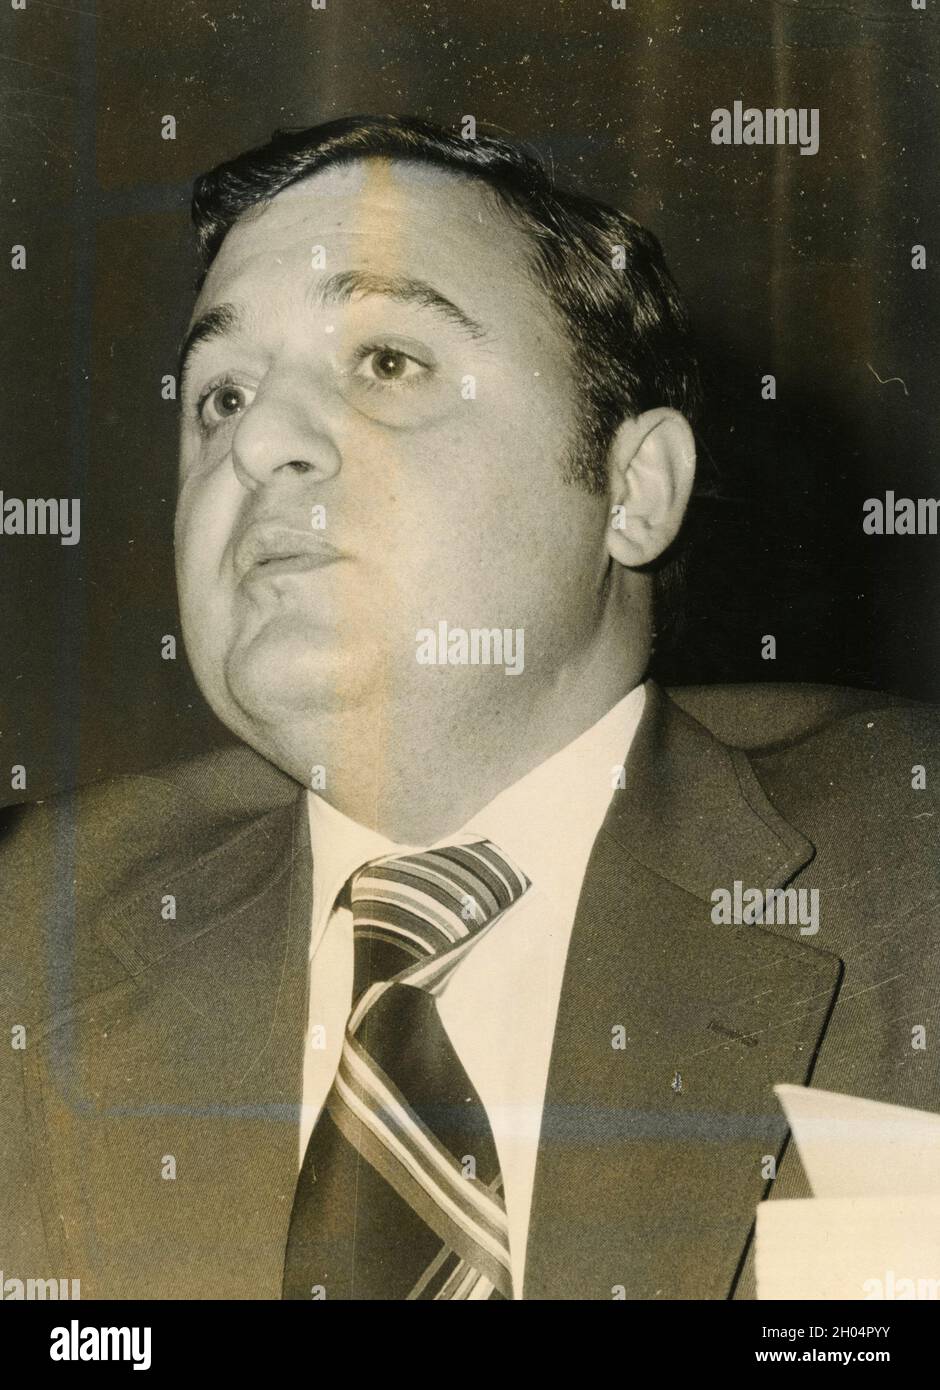 Italian politician Paolo Savona, 1970s Stock Photo